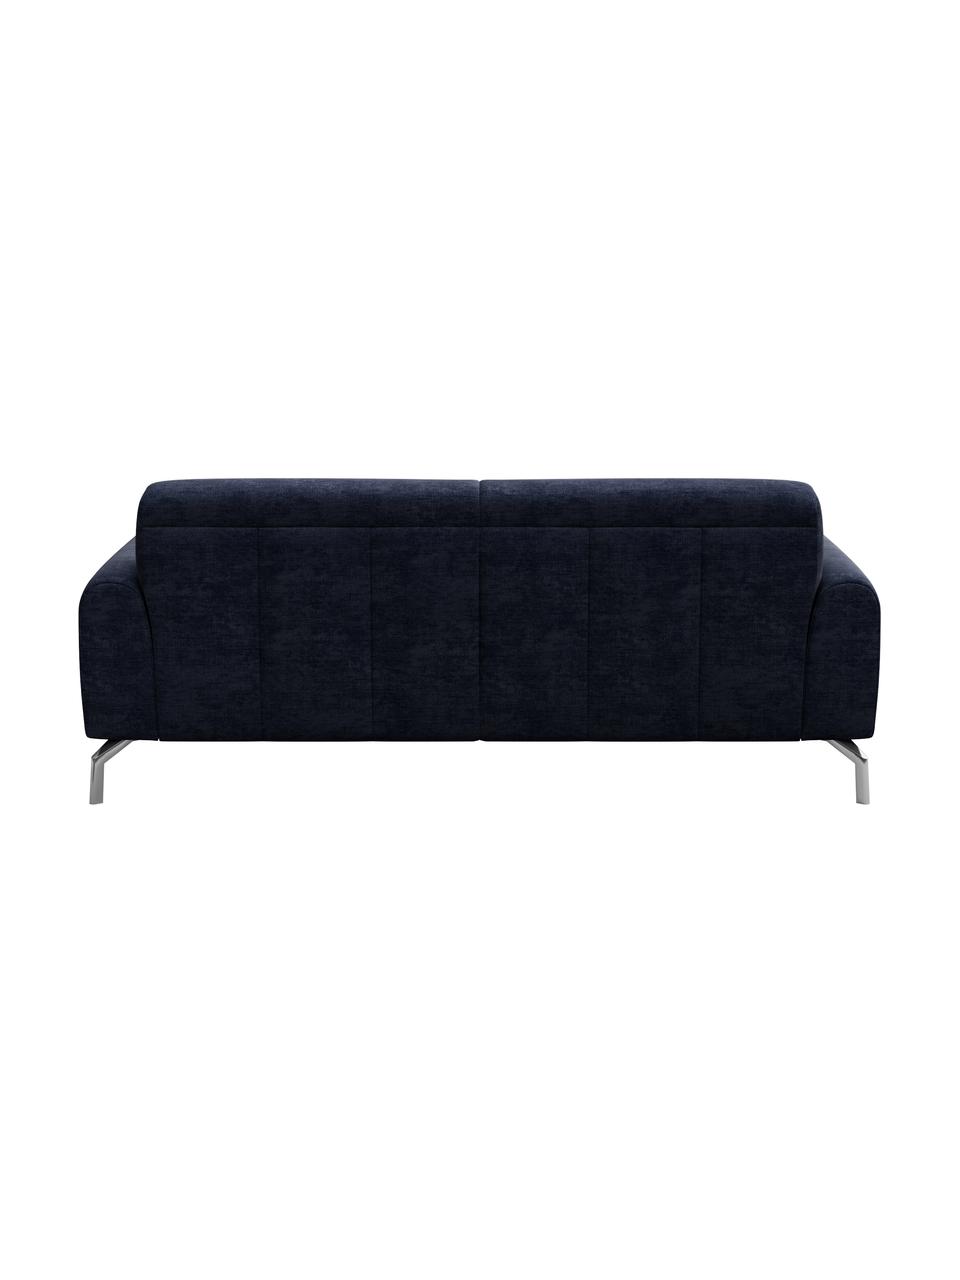 Sofa Puzo z Zero Spot System (2-osobowa), Tapicerka: 100% poliester z Zero Spo, Nogi: metal lakierowany, Niebieski, S 170 x G 84 cm